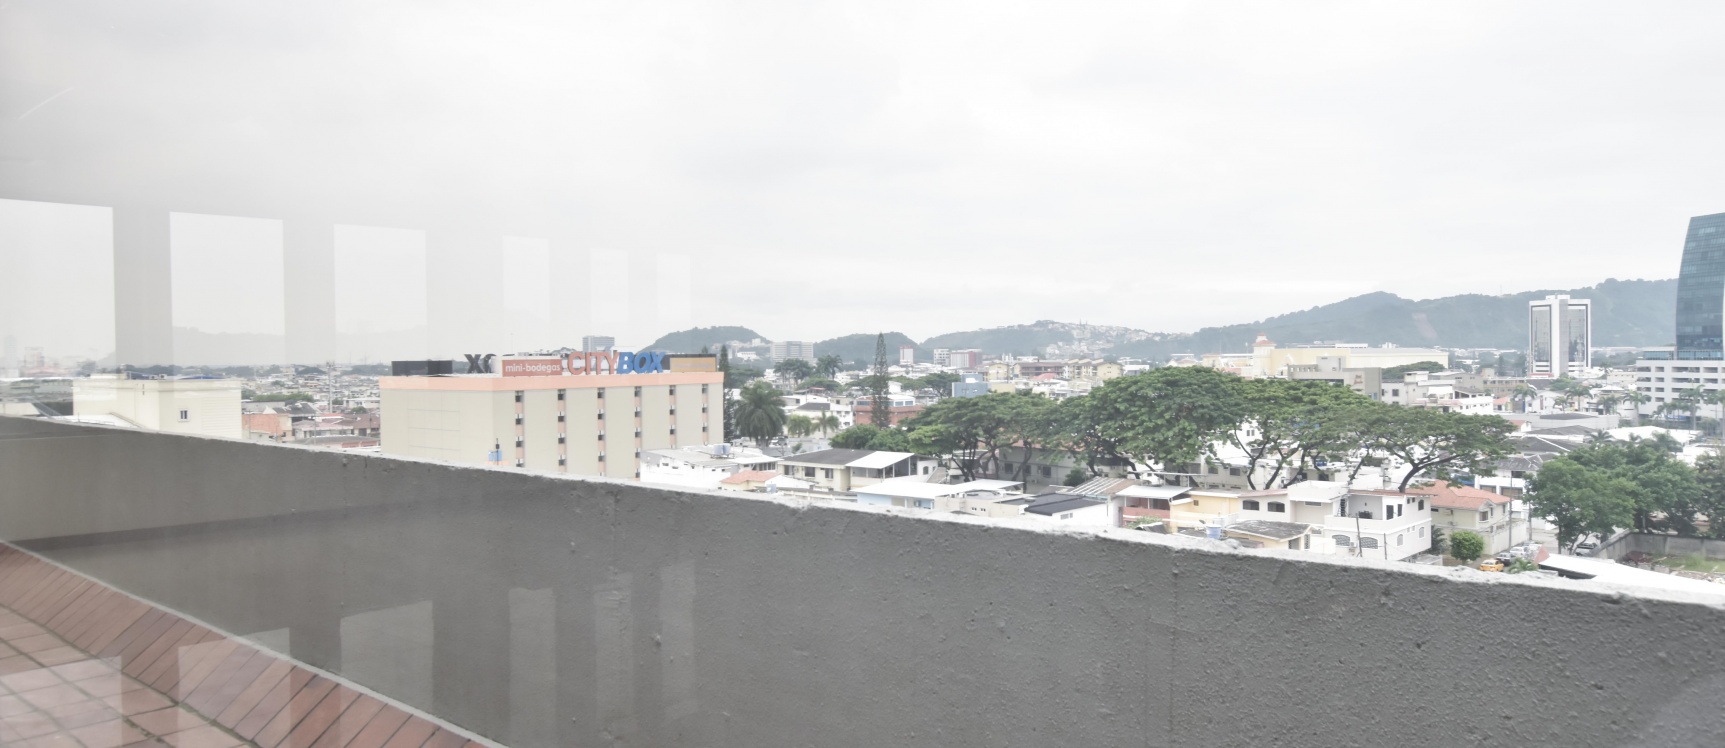 GeoBienes - Oficina en alquiler ubicada en el Edificio Mecanos - Plusvalia Guayaquil Casas de venta y alquiler Inmobiliaria Ecuador